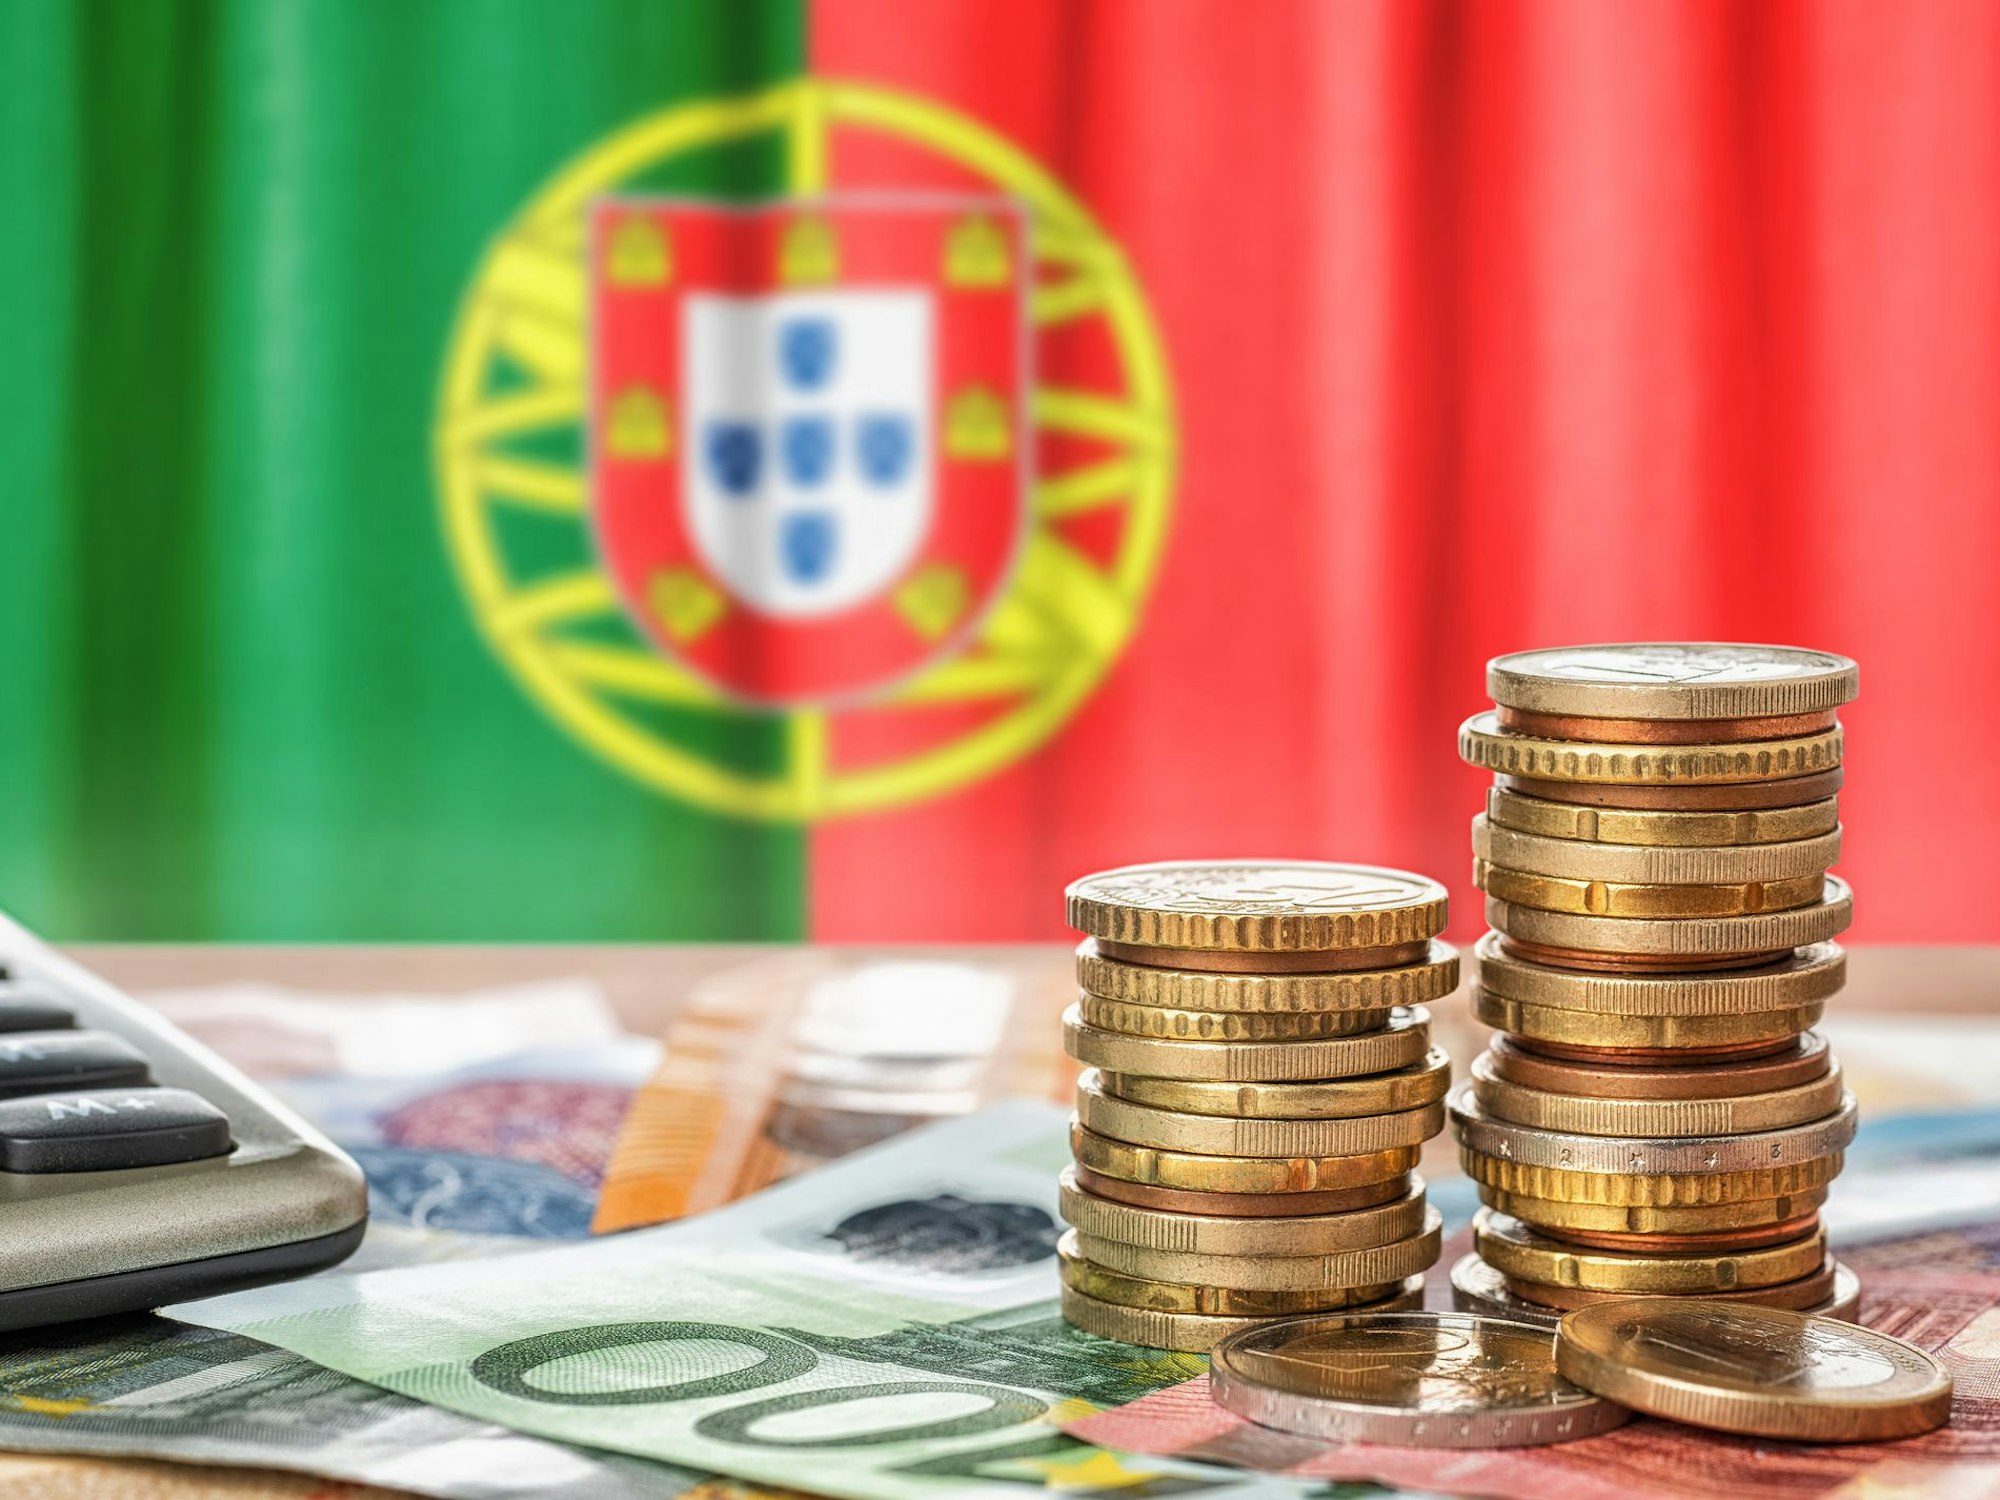 Münzen, Scheine und Taschenrechner vor einer portugiesischen Nationalflagge.